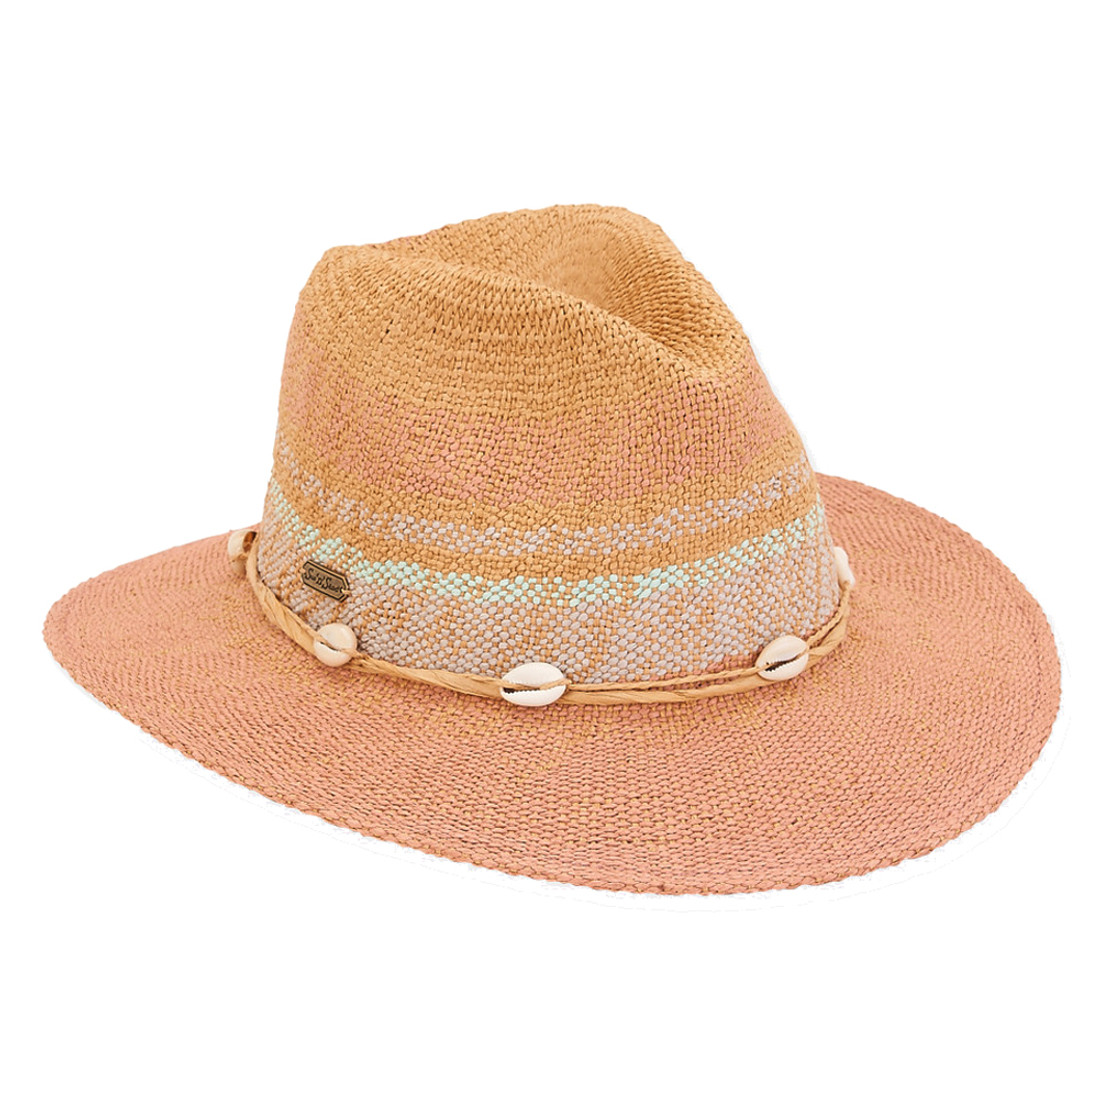 Sun 'n' Sand Paper Straw Summer Hat